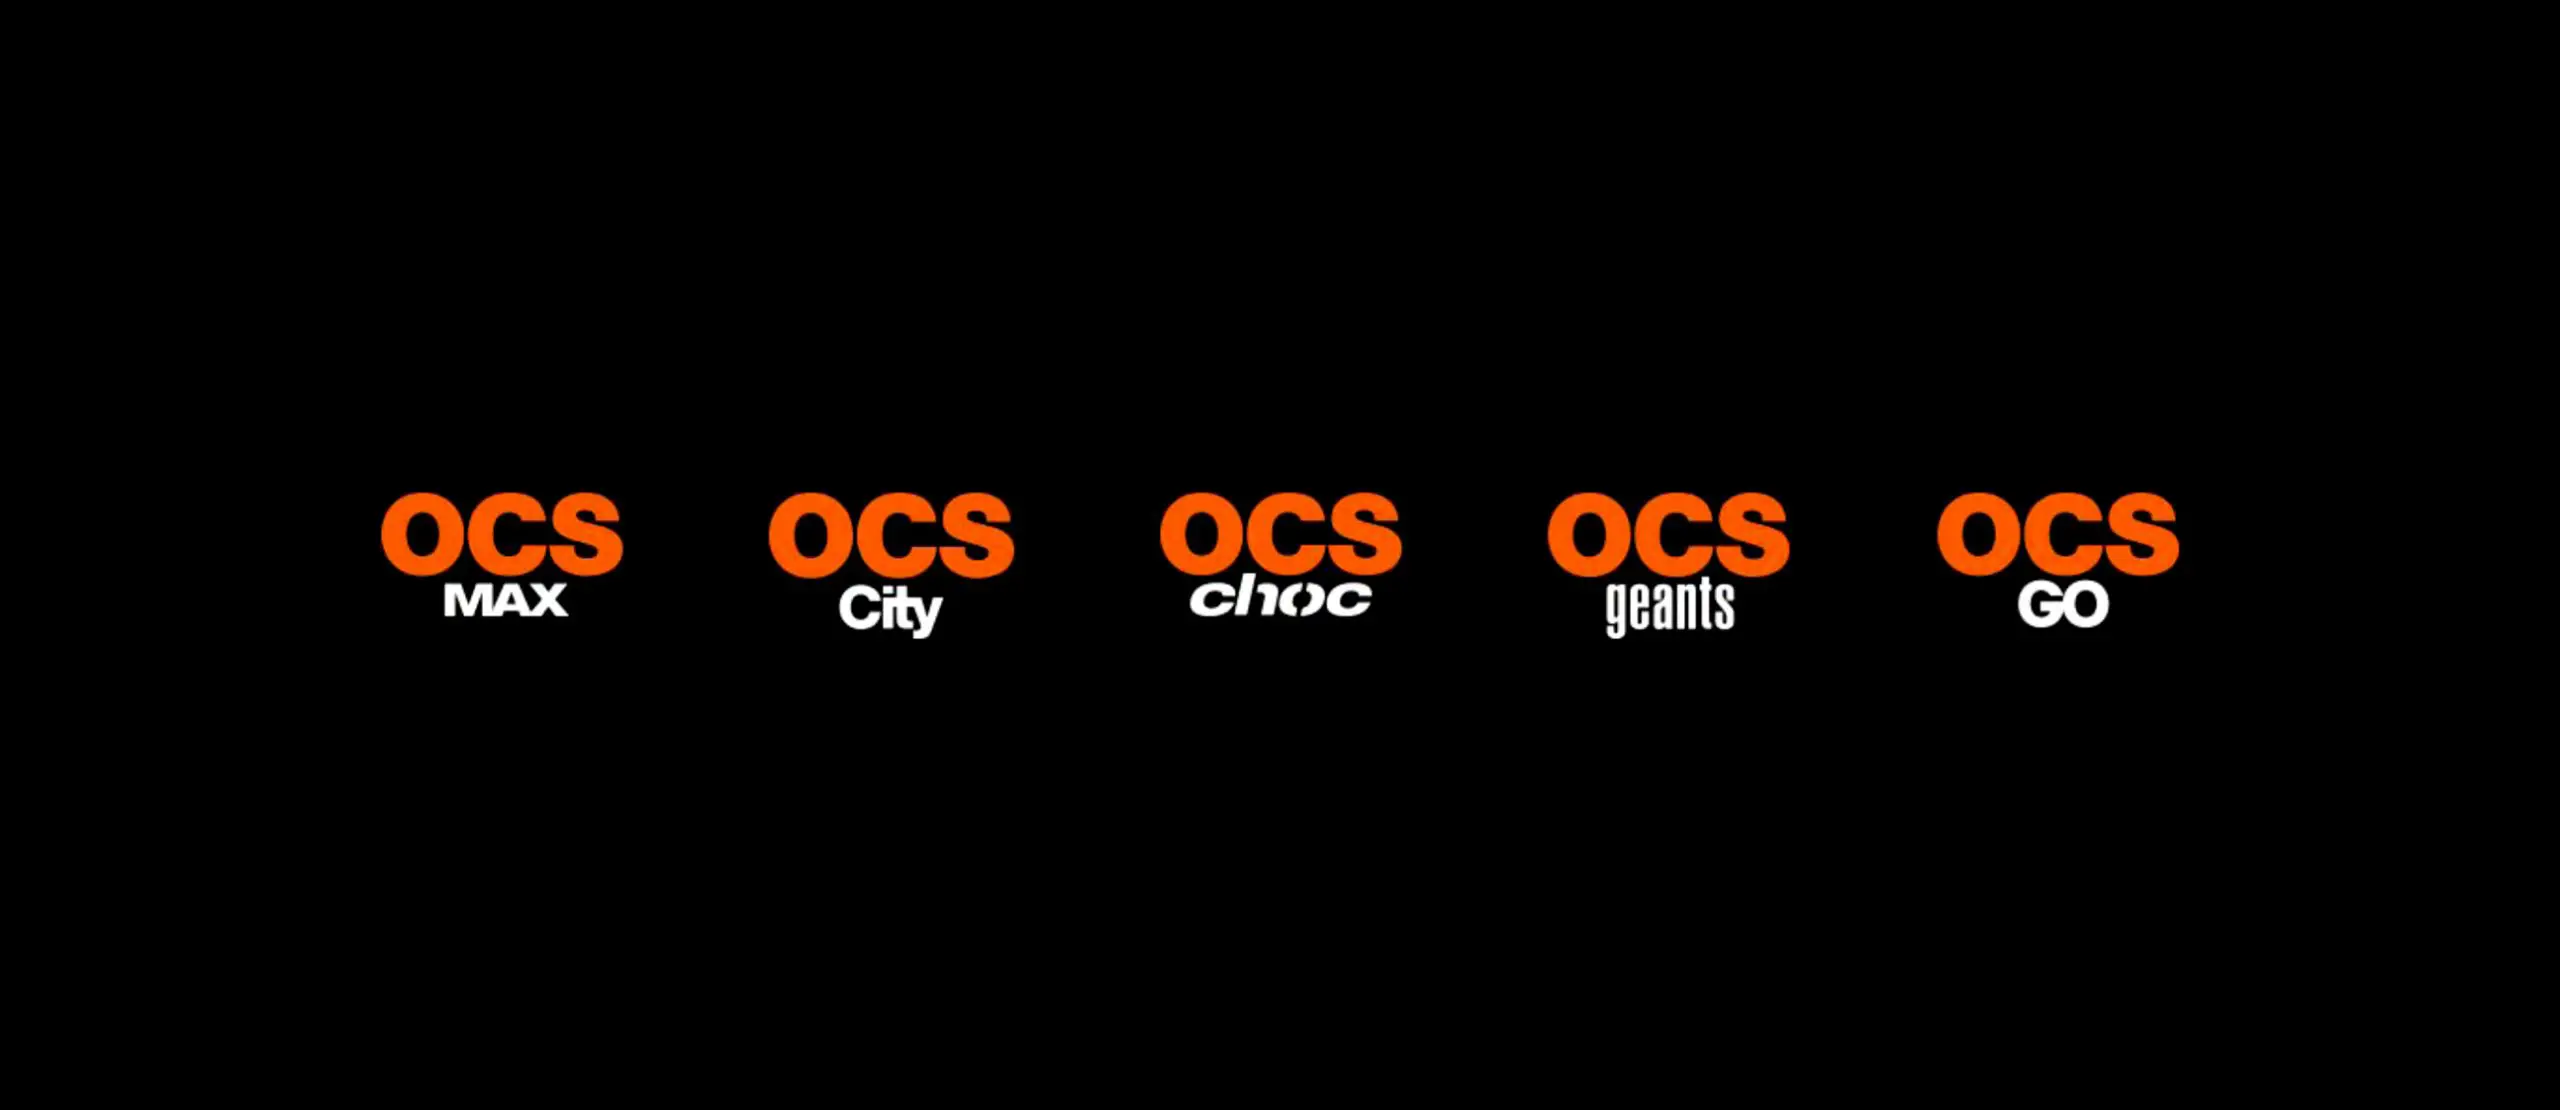 OCS et HBO, la chaîne historique à péage américaine, dévoilent les aspects de leur partenariat renouvelé en janvier 2013 avec la création d’OCS City, "génération HBO".